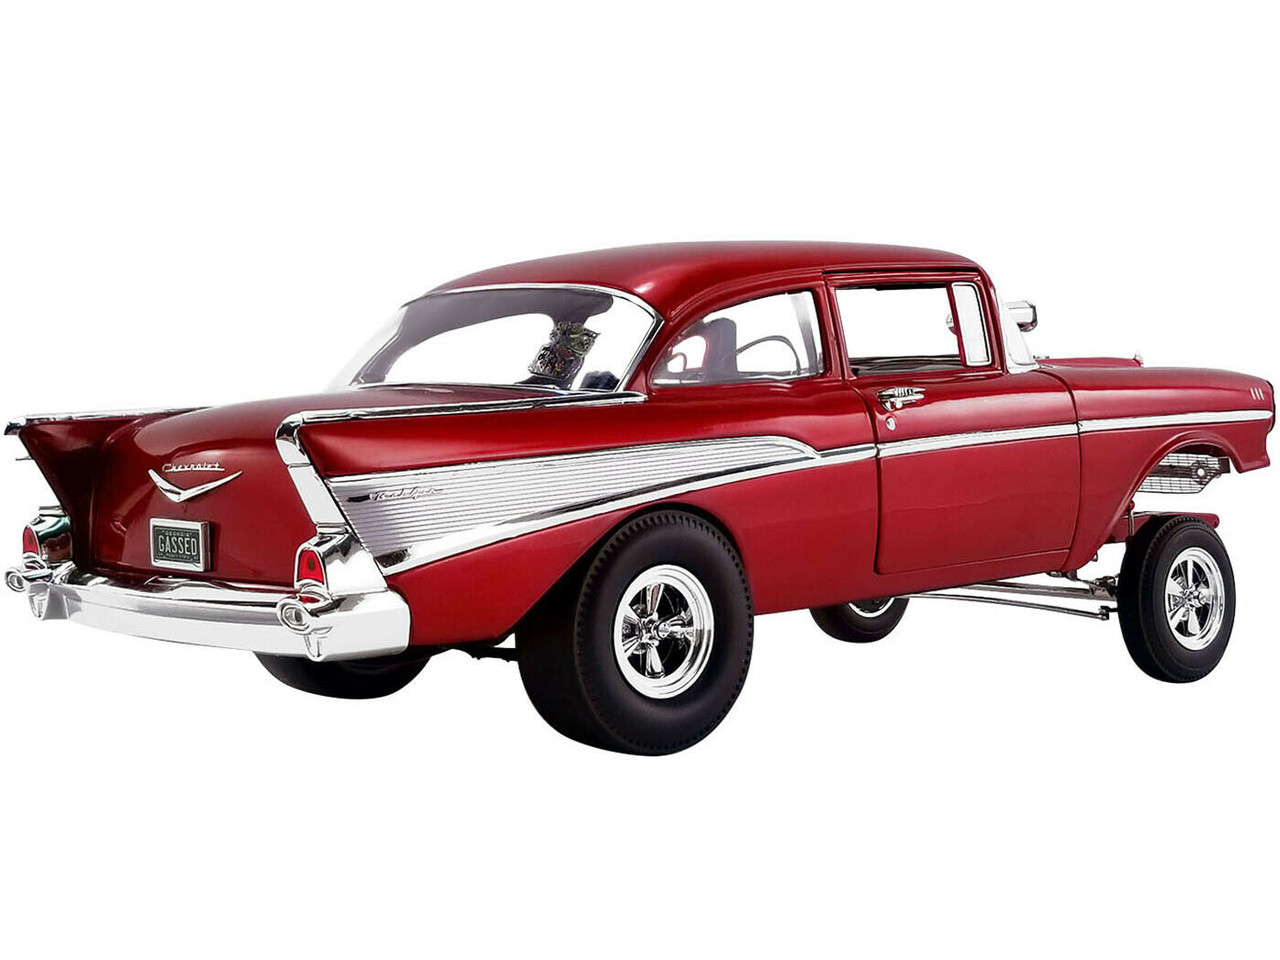 1/18 ACME Mr. Gasser 1957 Chevrolet Bel Air Rat Fink Gasser (Red) Limited  Diecast Car Model